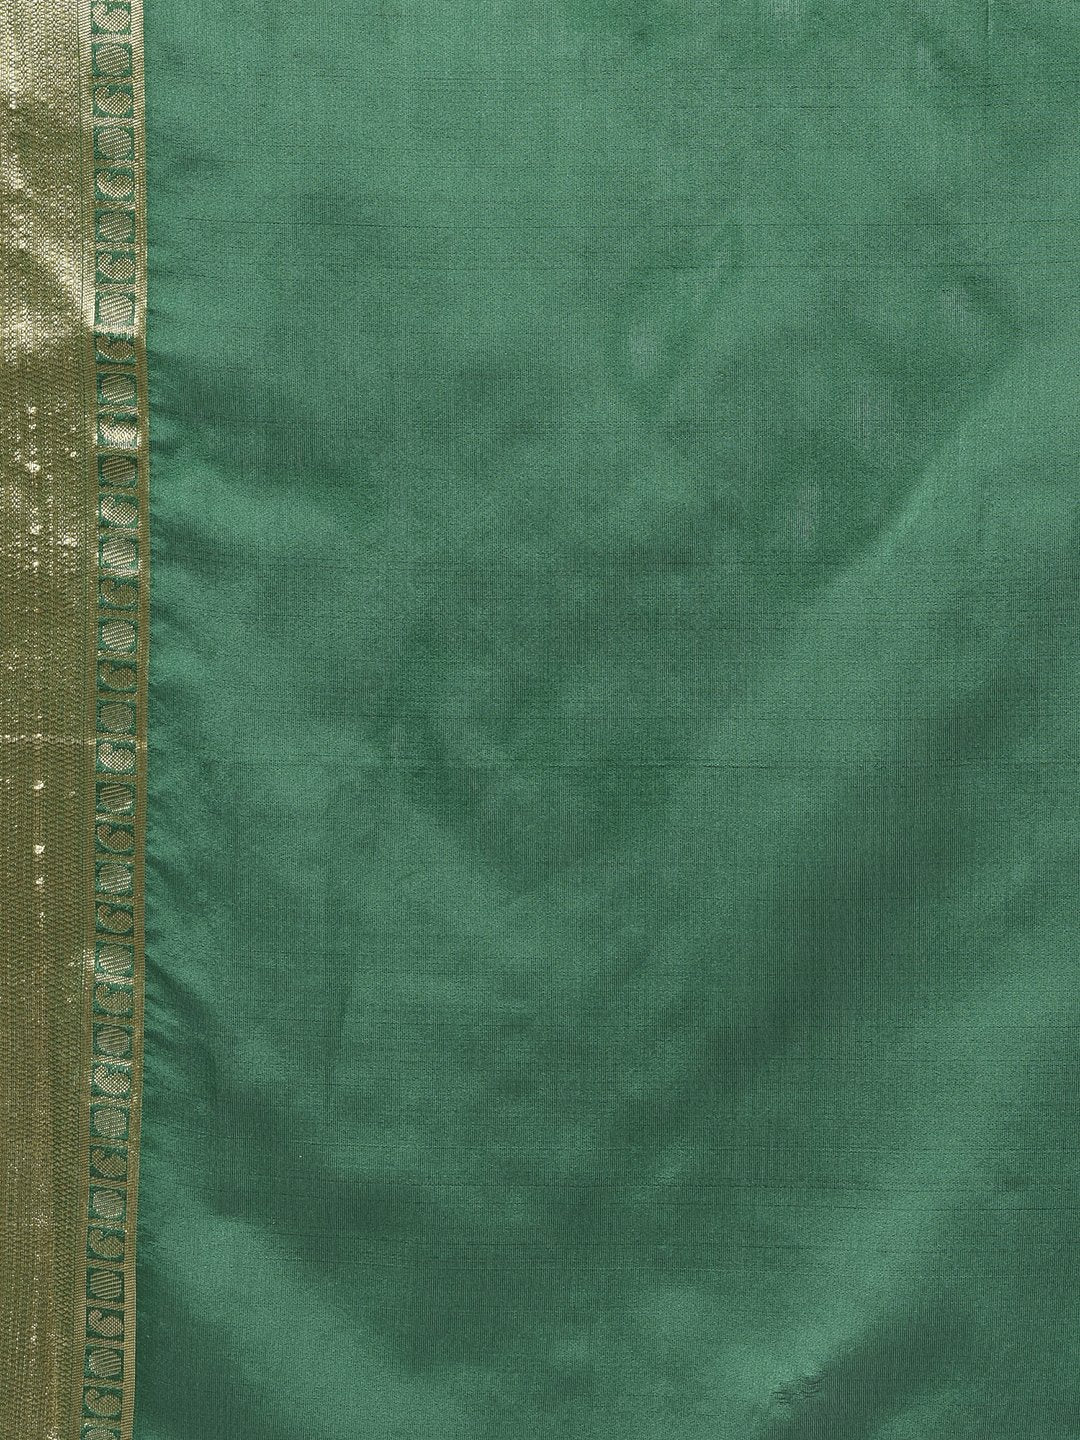 Handloom Saree In Dark Green Color